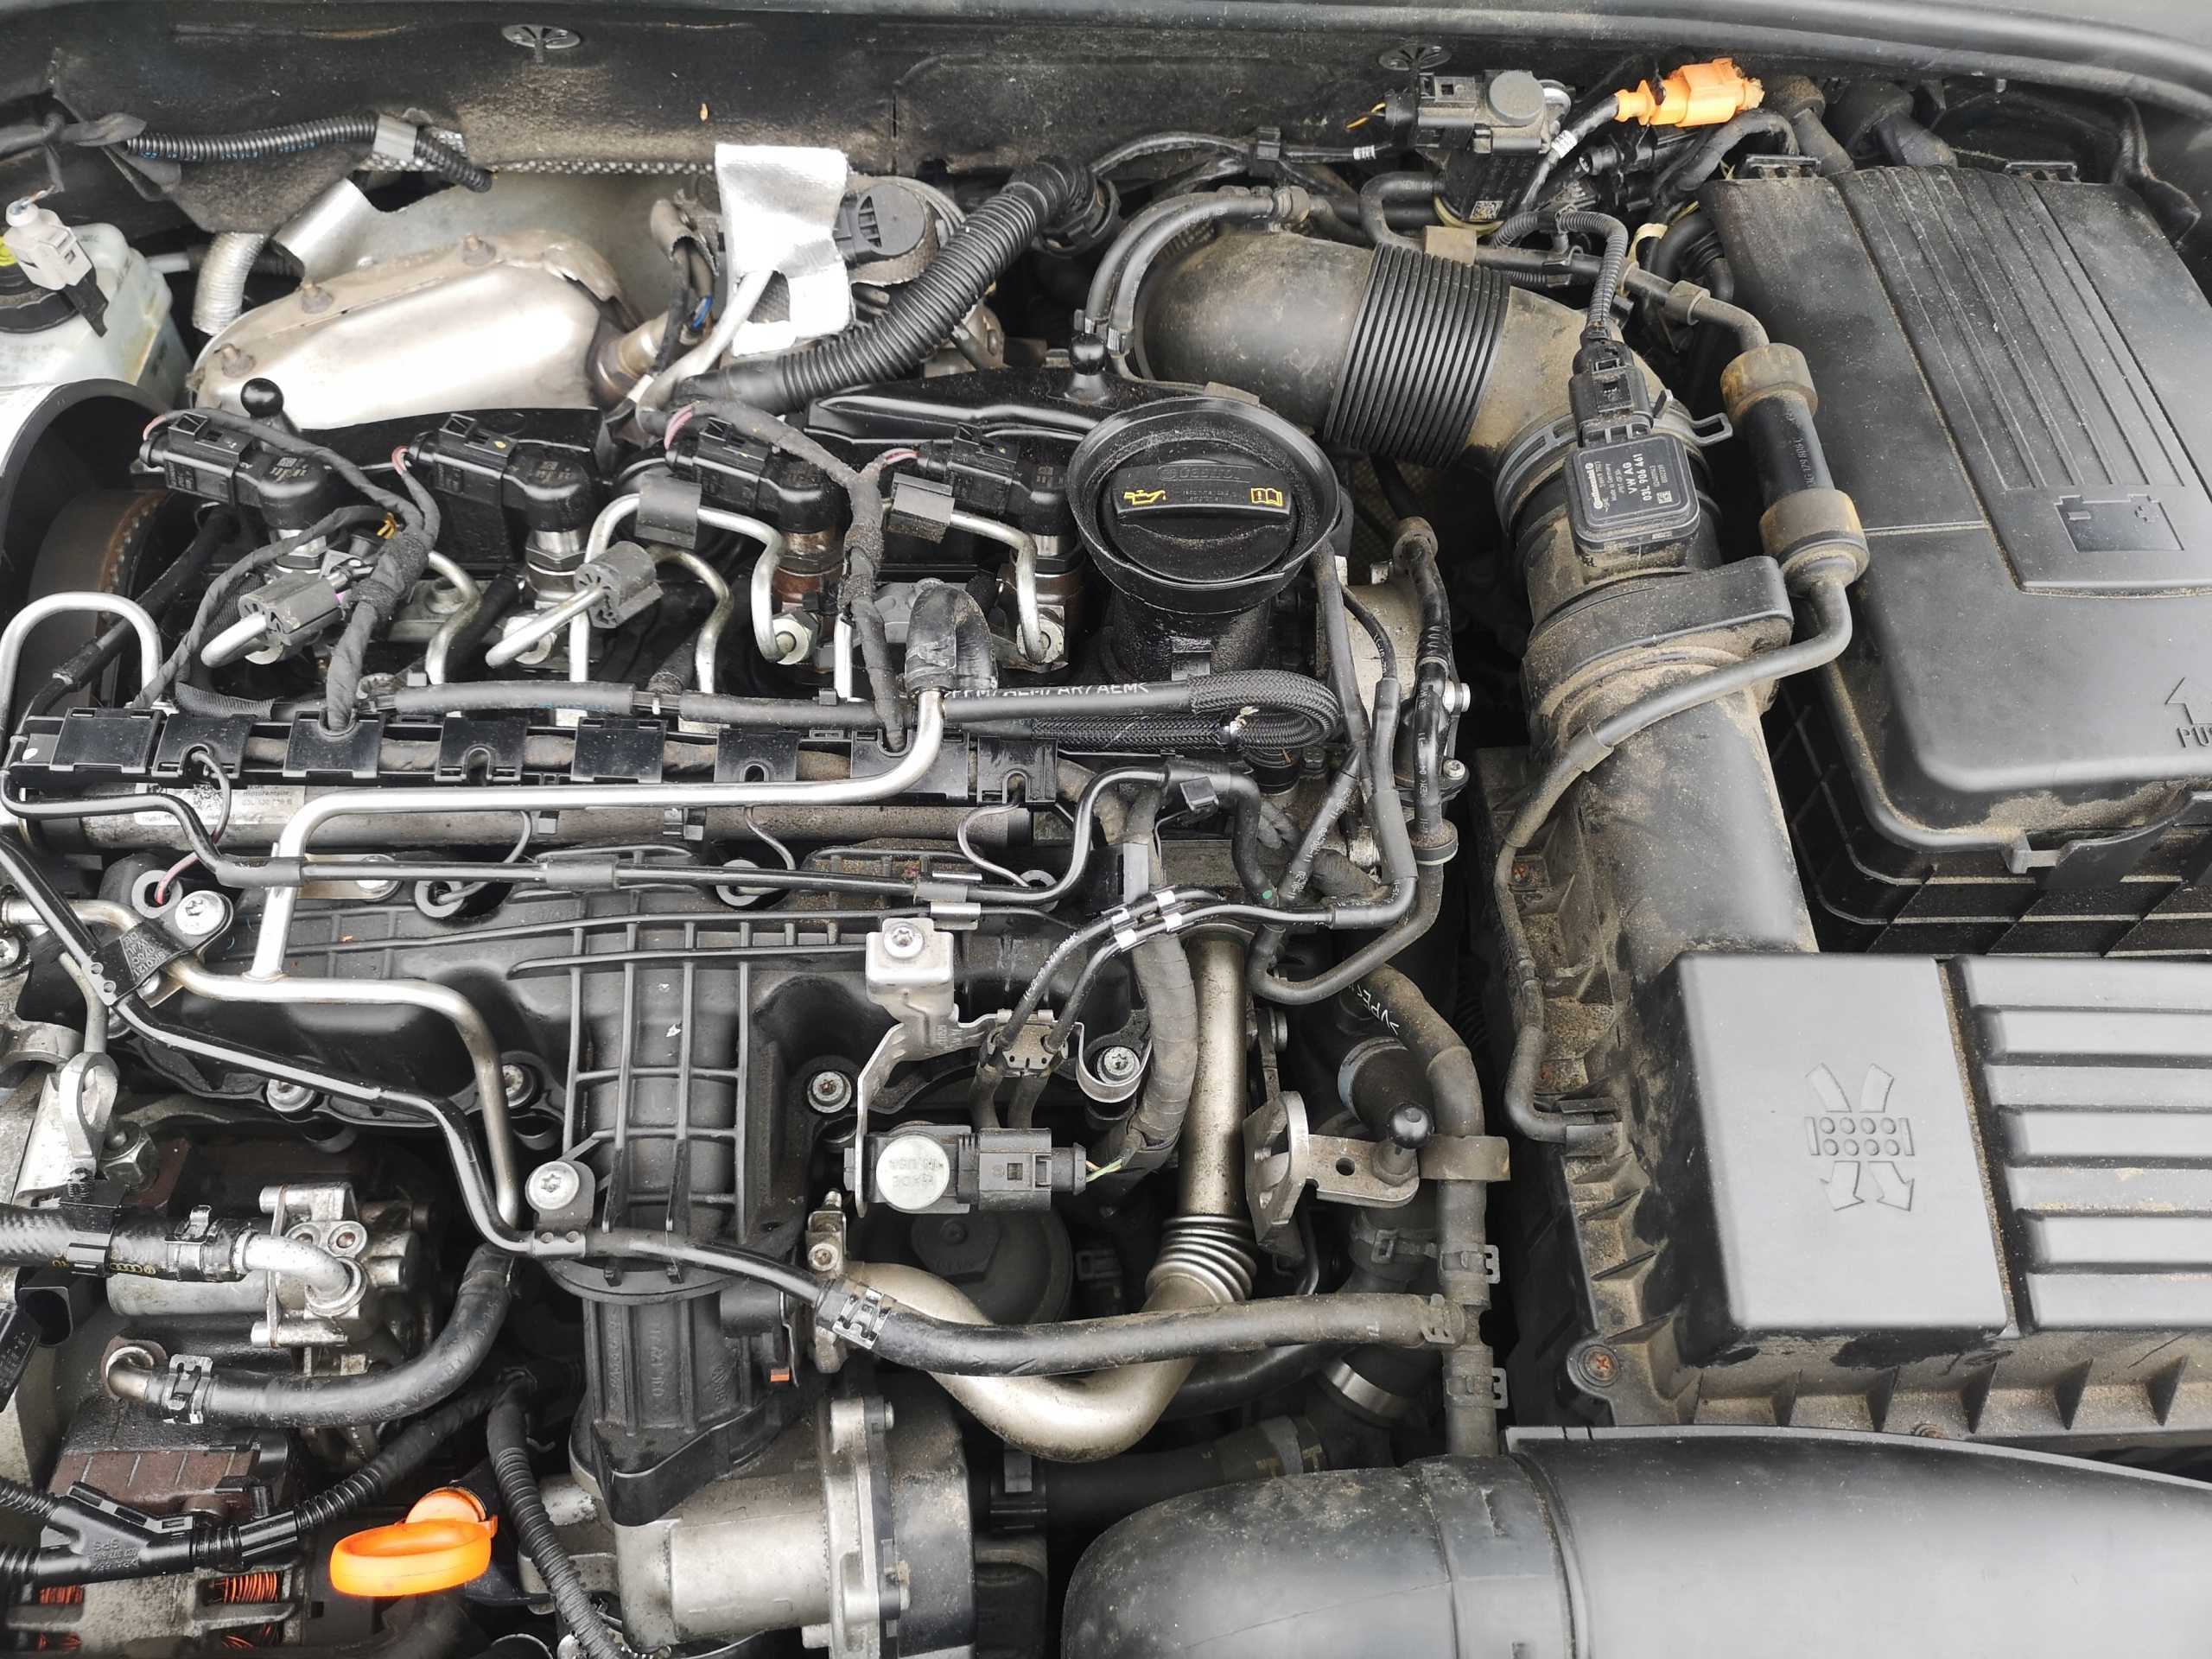 В статье мы рассмотрим двигатель новой Шкода Октавия Skoda Octavia и Фольксваген Гольф Volkswagen Golf – EA288 CRMB 20 TDI 16v 150 лс, а также узнаем ресурс, характеристики, проблемы дизеля